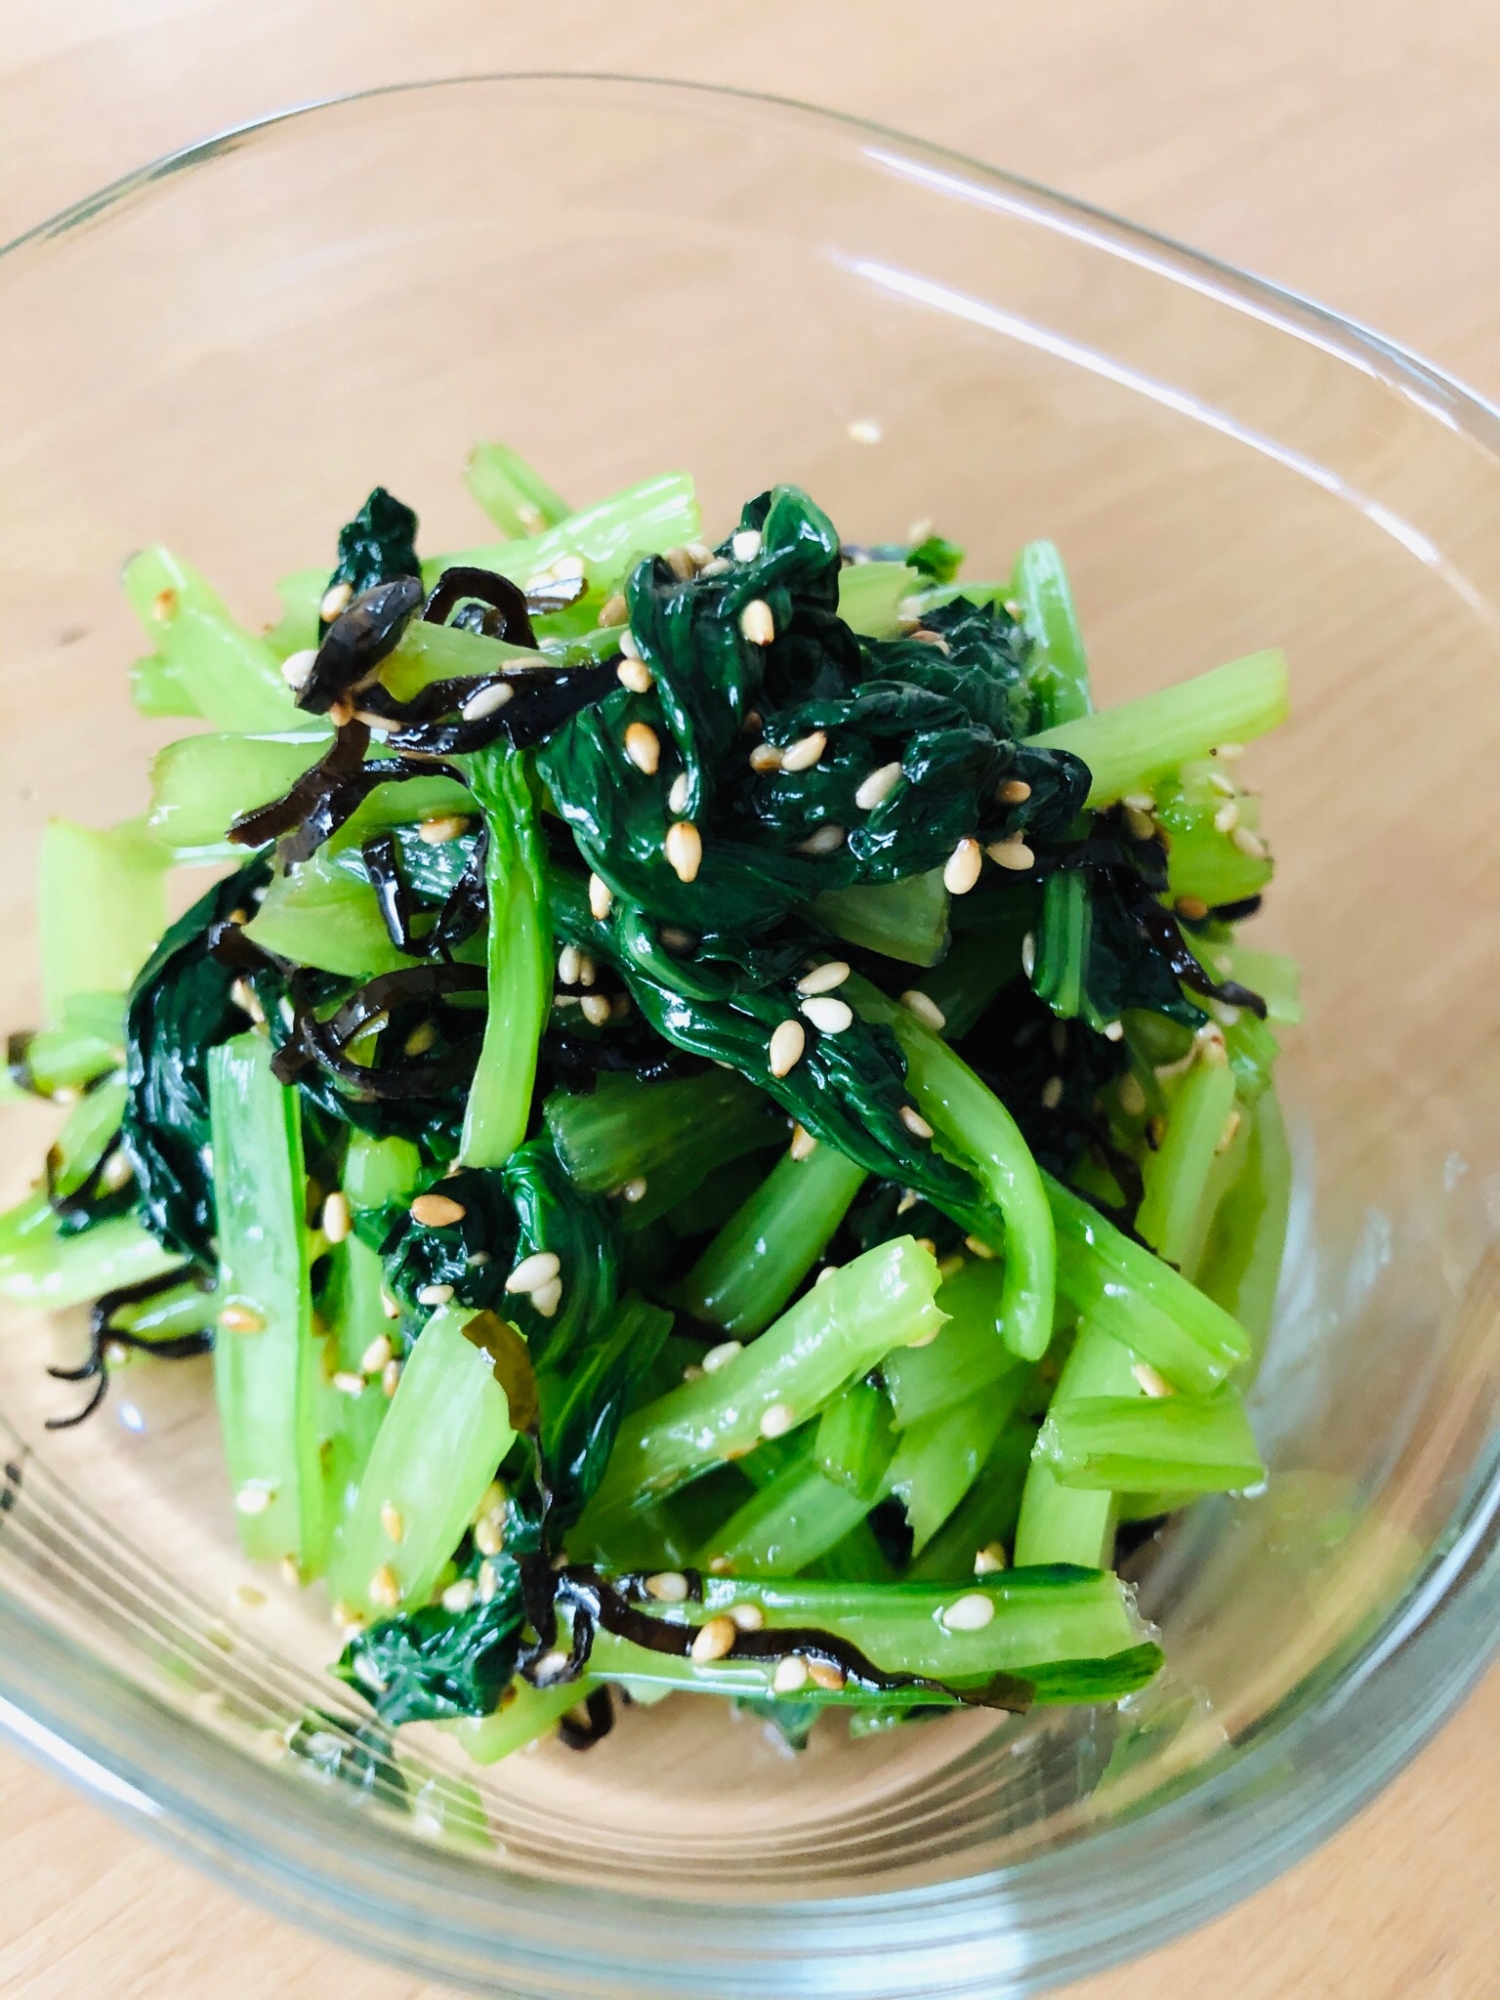 小松菜と塩昆布のナムル